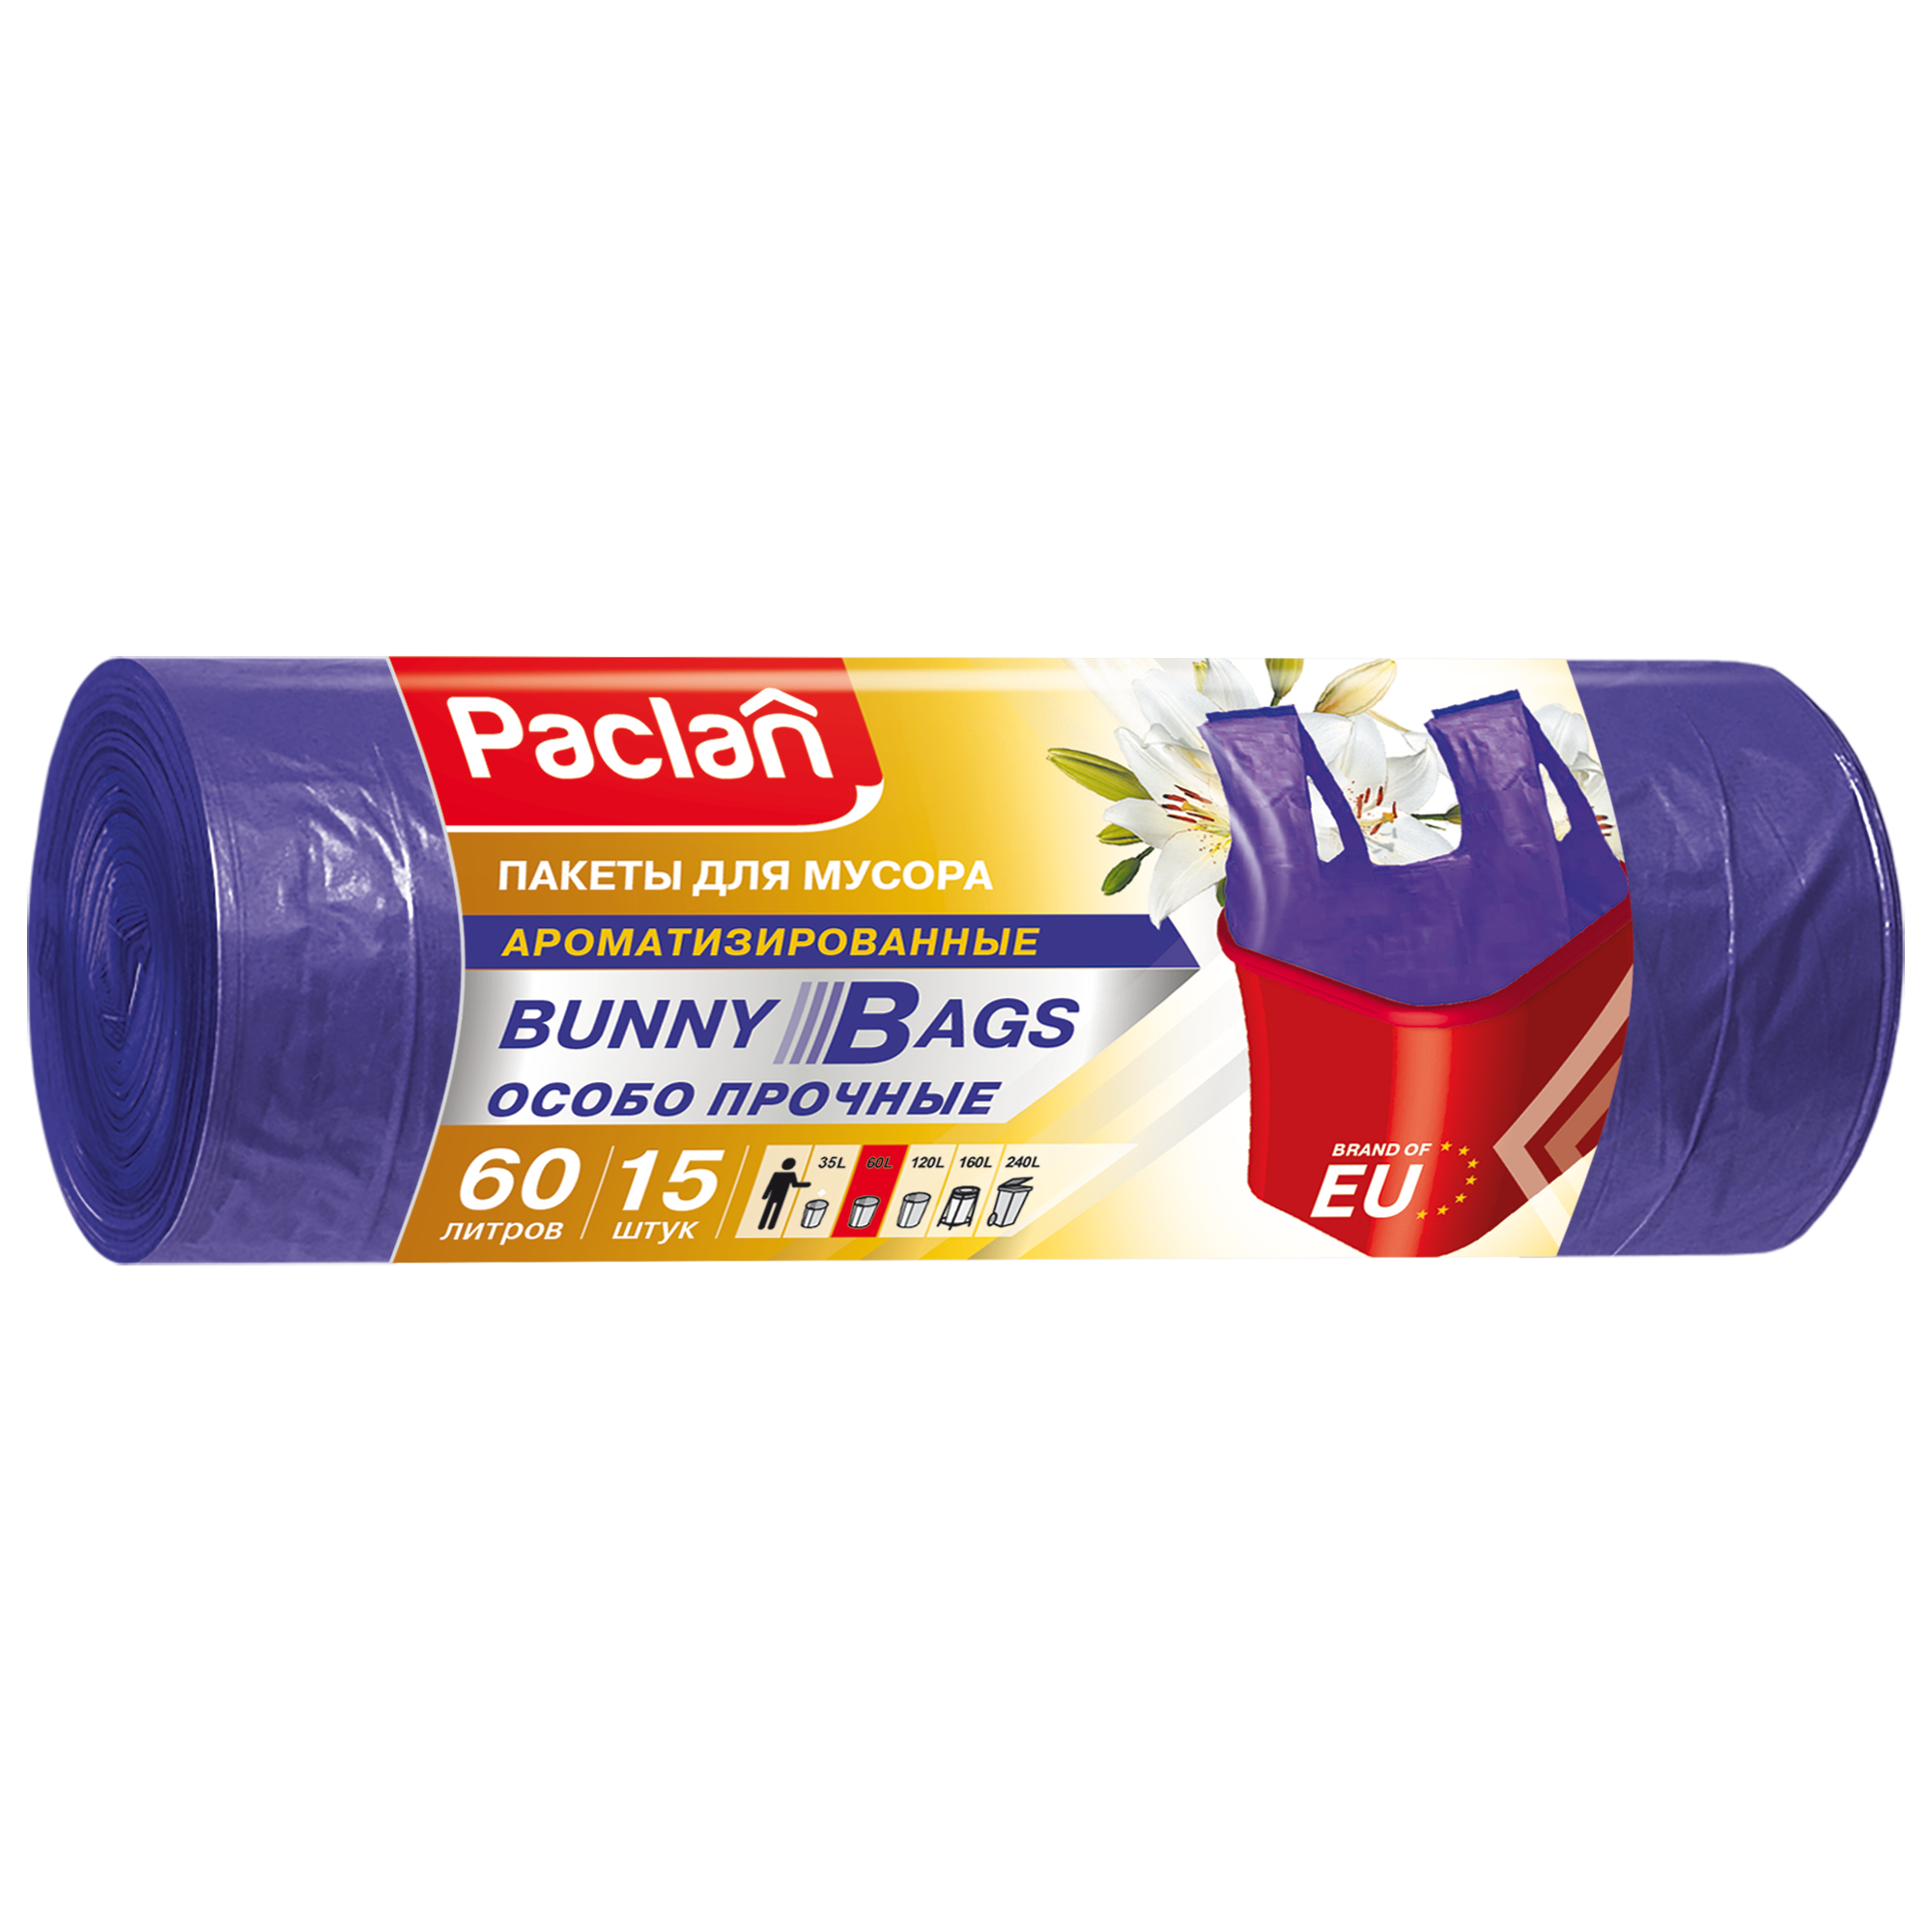 мешки для мусора paclan bunny bags aroma с ручками 35 л 20 шт Мешки для мусора Paclan Bunny bags aroma 60 л 15 шт